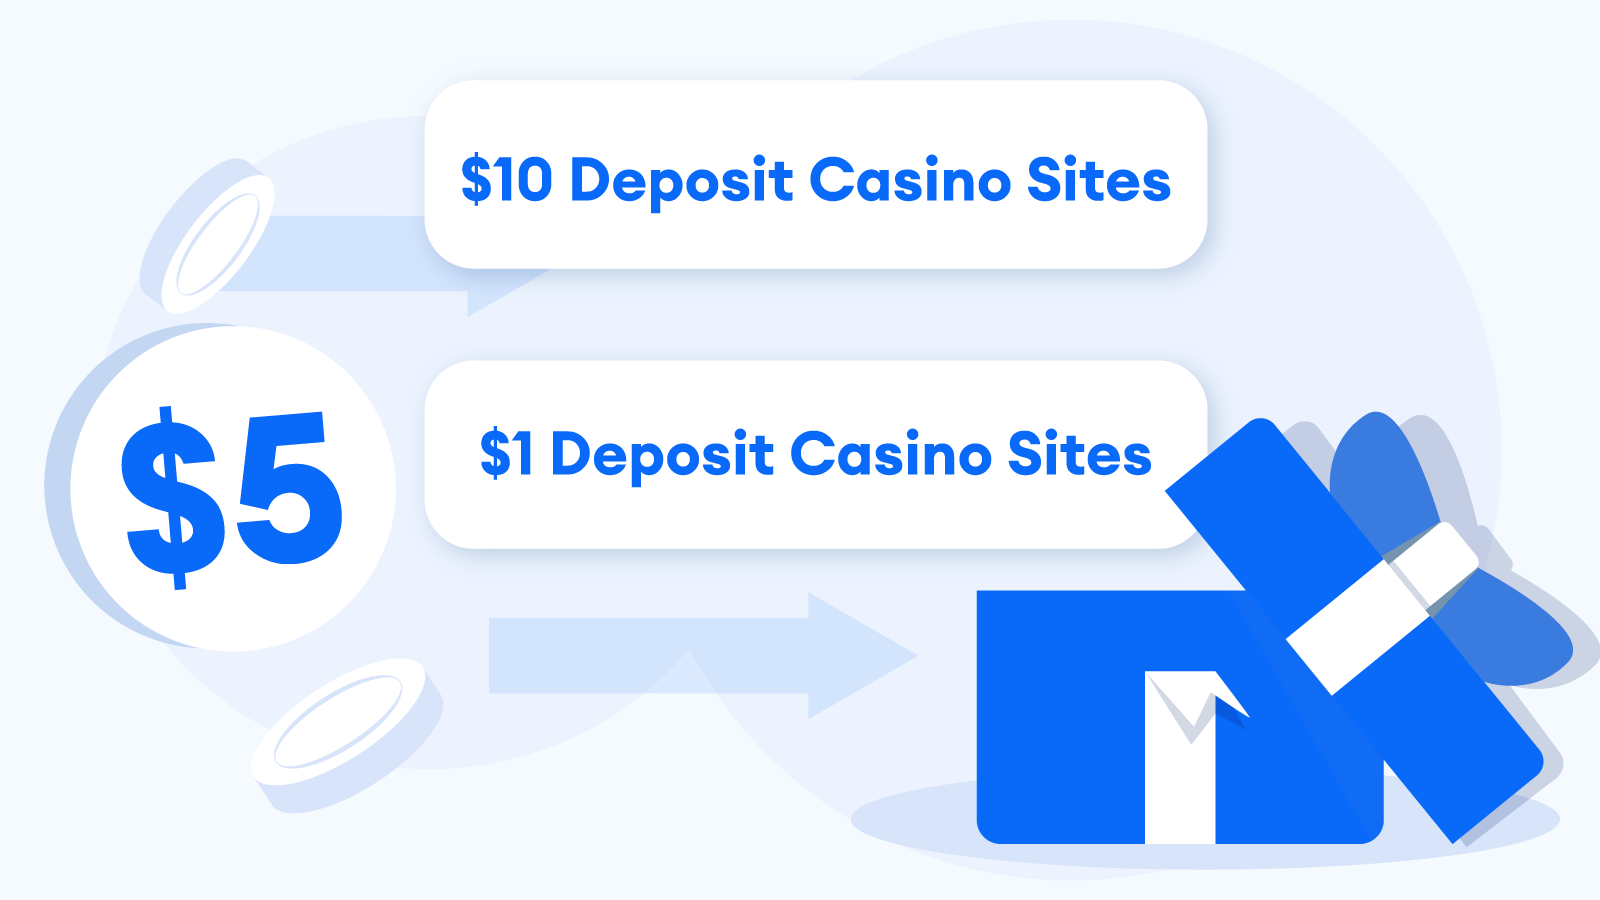 Low minimum deposit casino alternatives